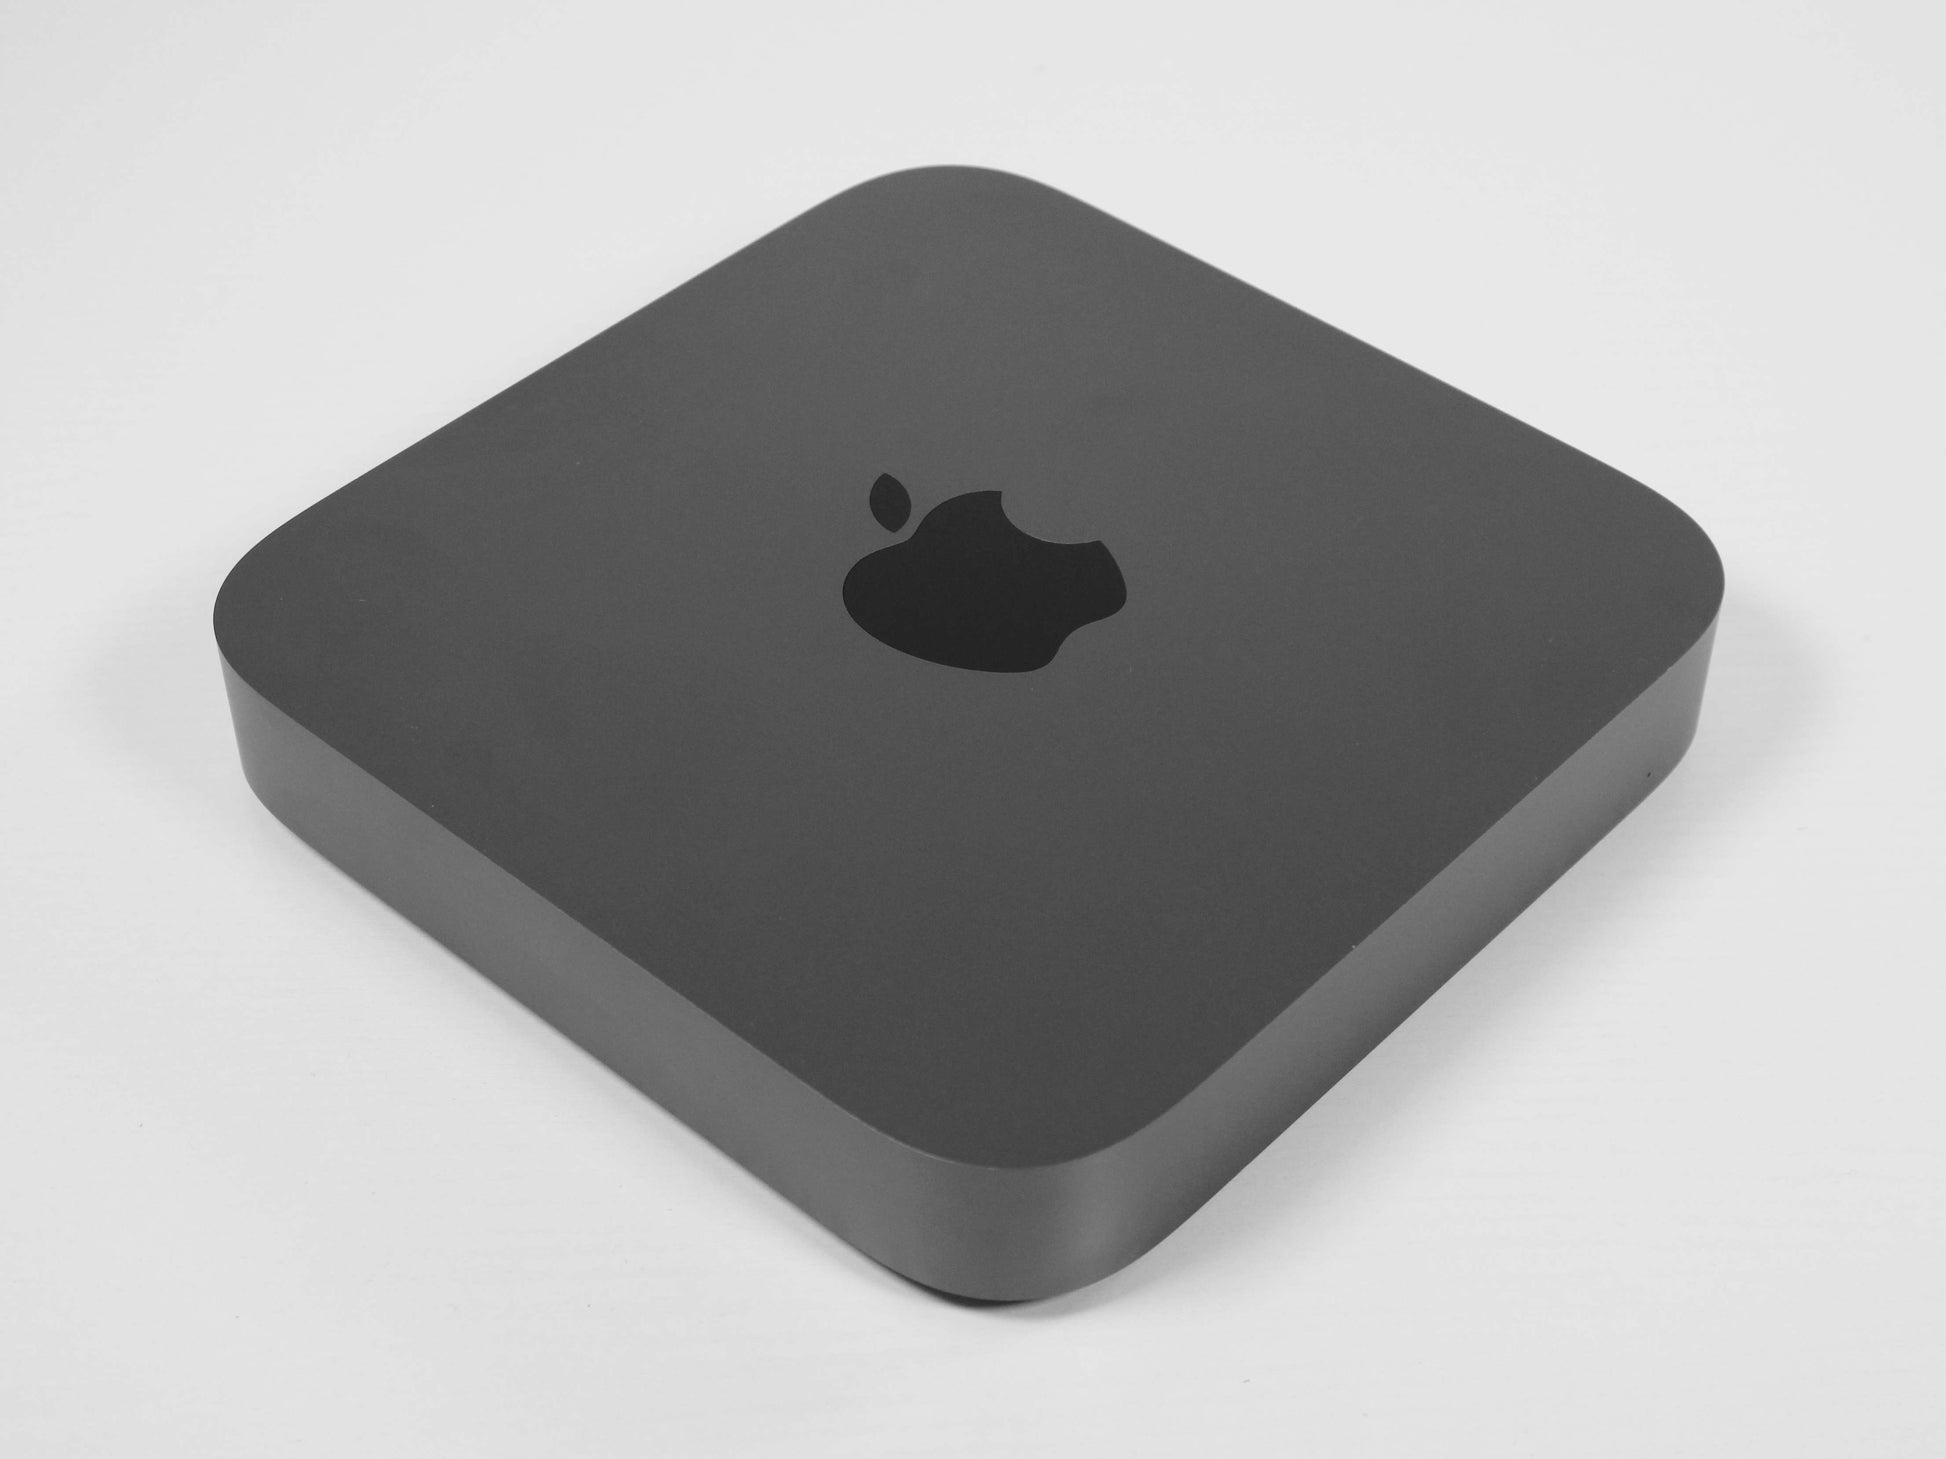 Apple Mac Mini 3.0GHz i5 6-Core 512GB SSD 2018 Space Grey - MRTT2LL/A